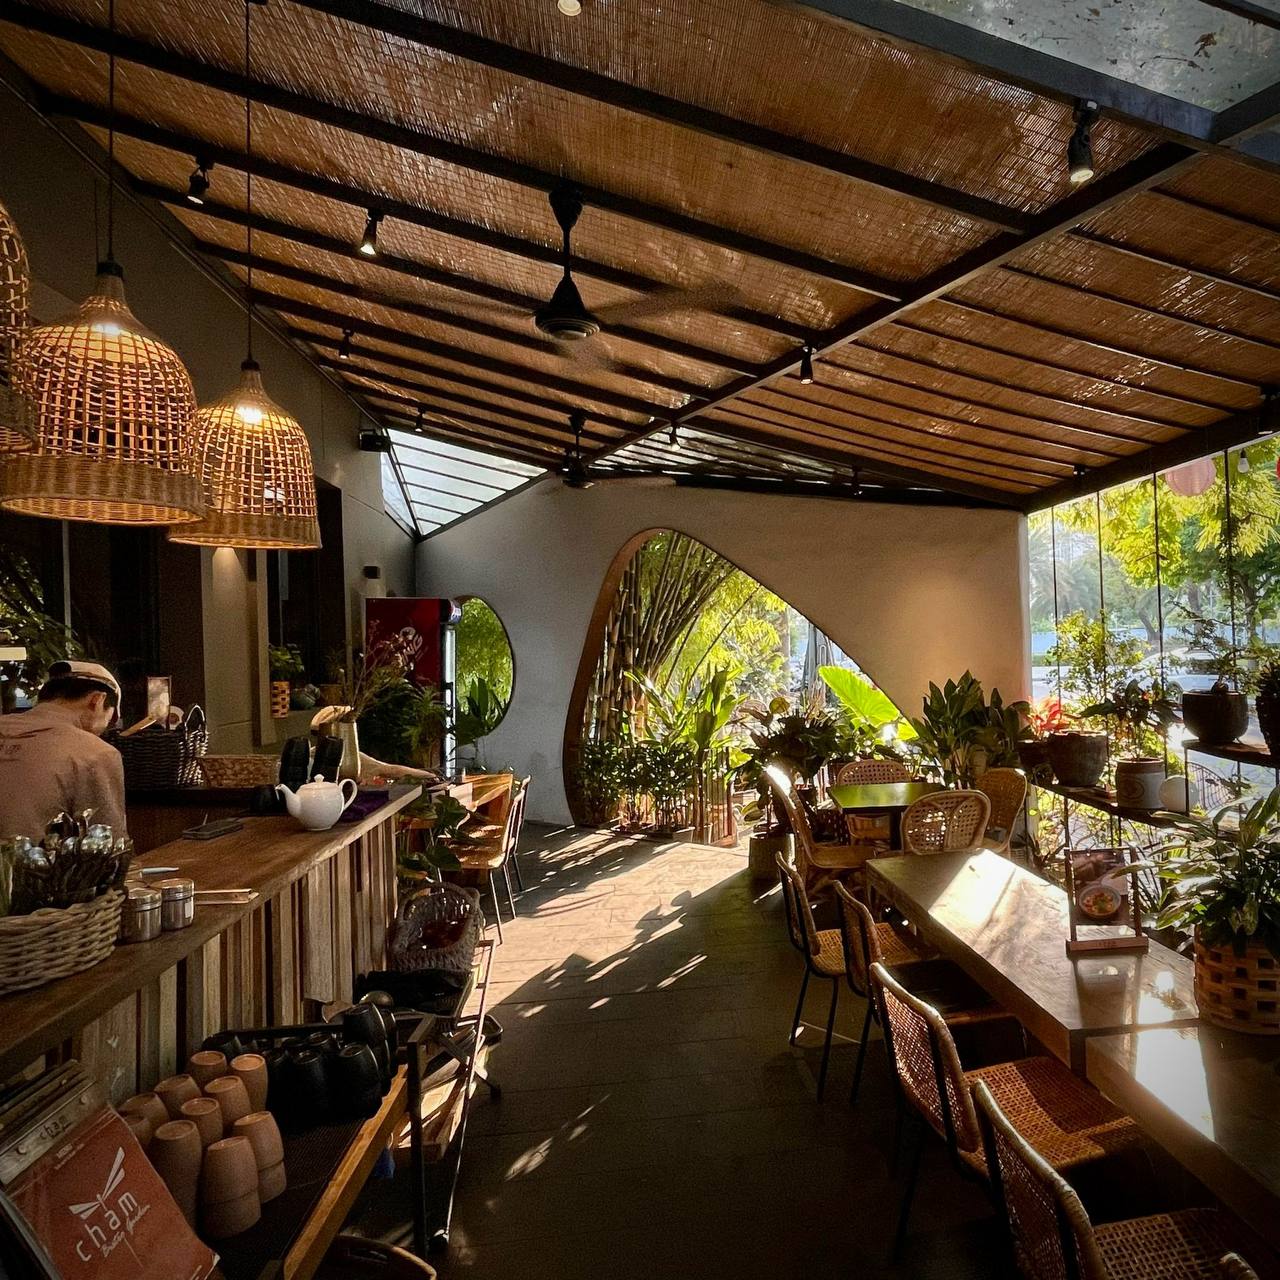 Có thể đến trực tiếp nhà hàng để thử trước các món ăn trong một không gian xanh mát tuyệt vời